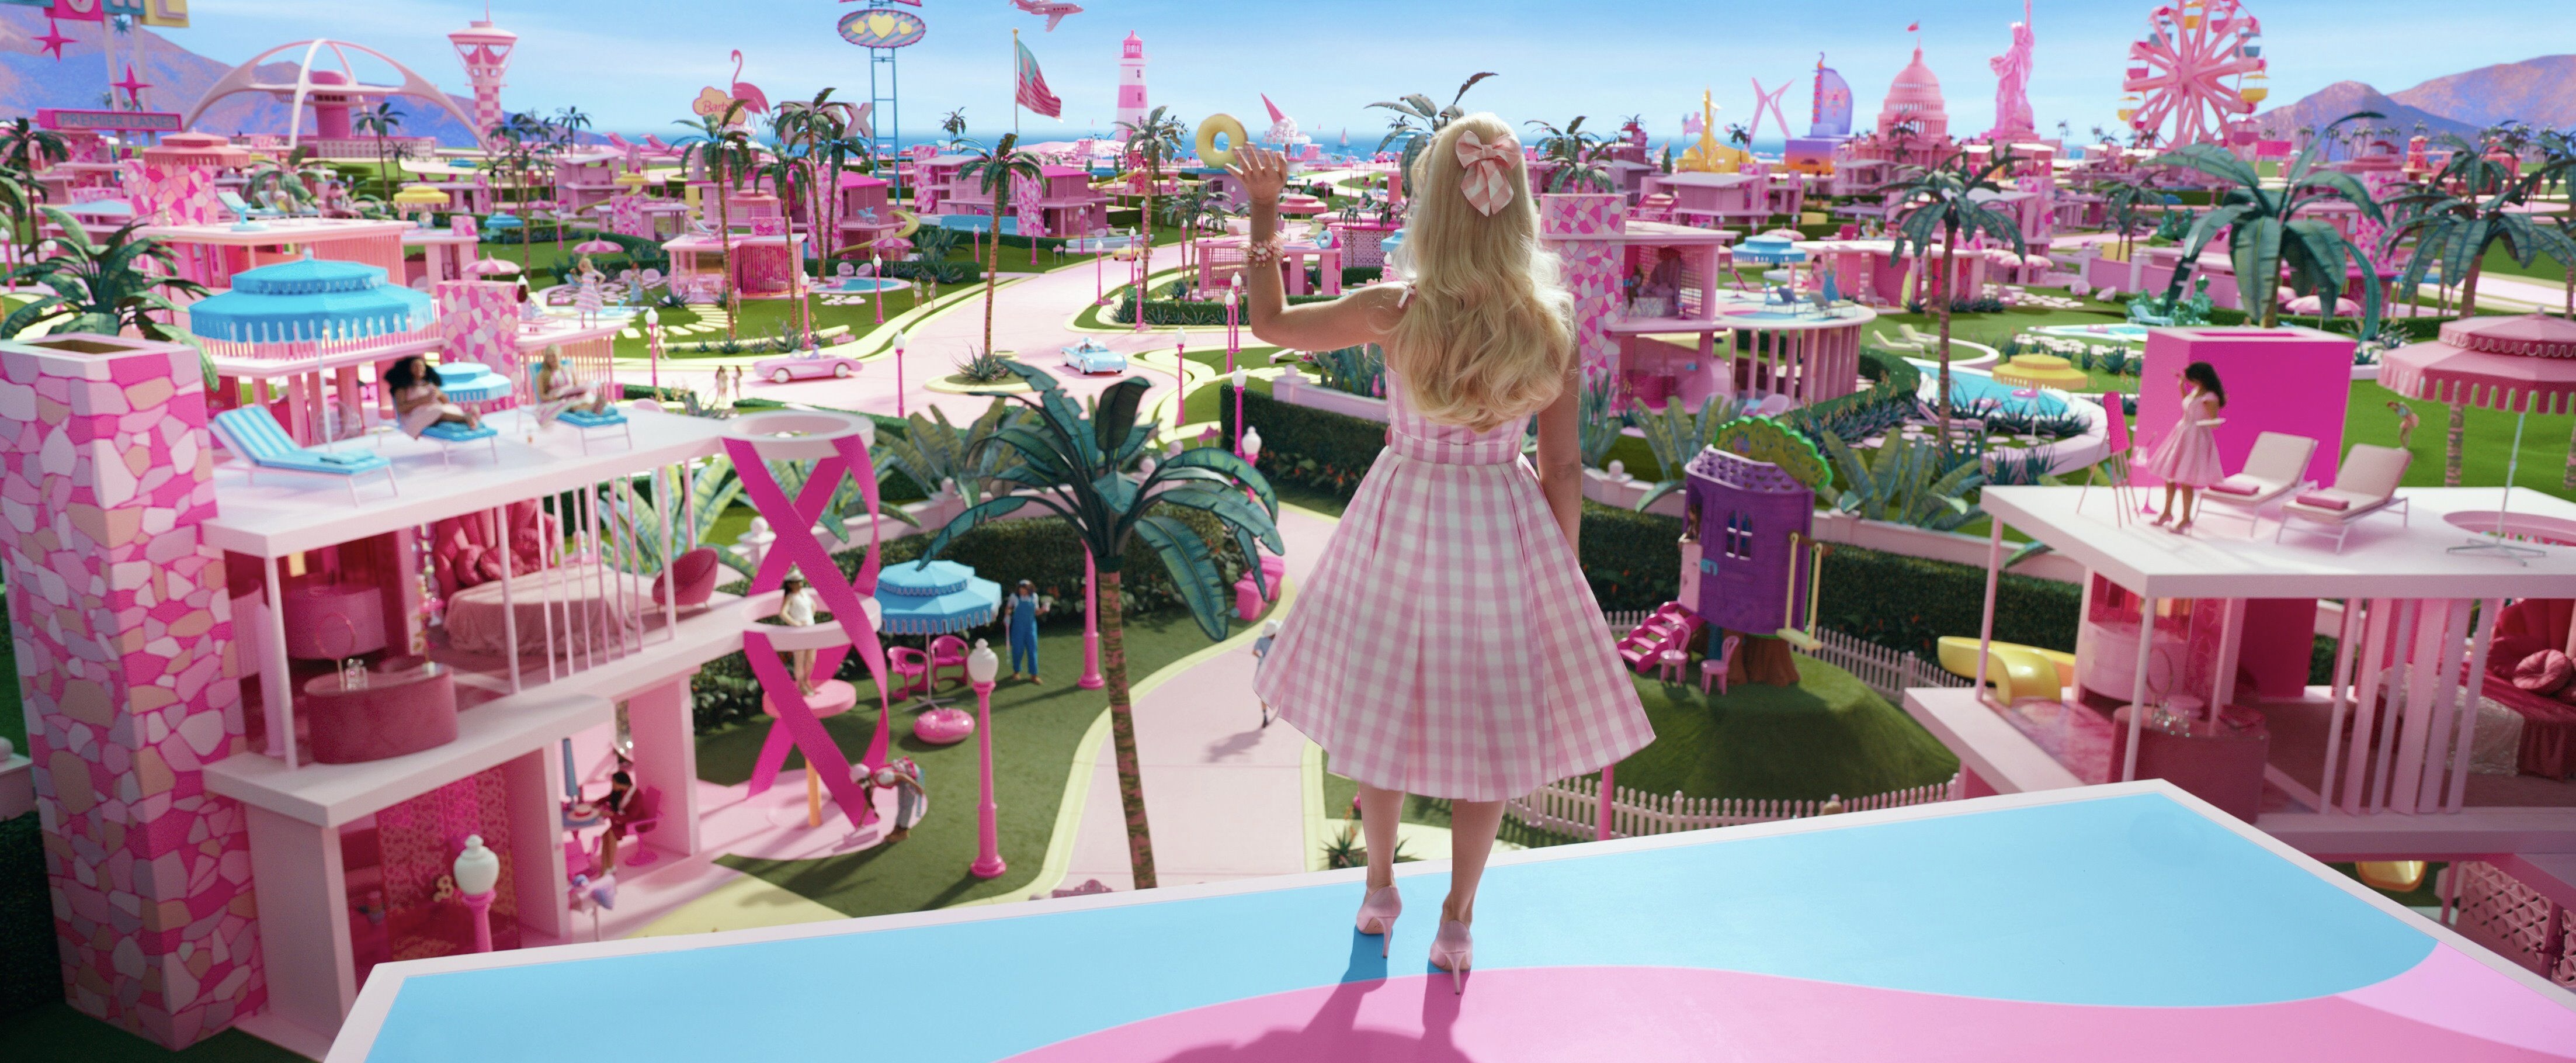 Déze Easter eggs uit de Barbie-trailer die verwijzen naar The Wizard of Oz wil je niet missen